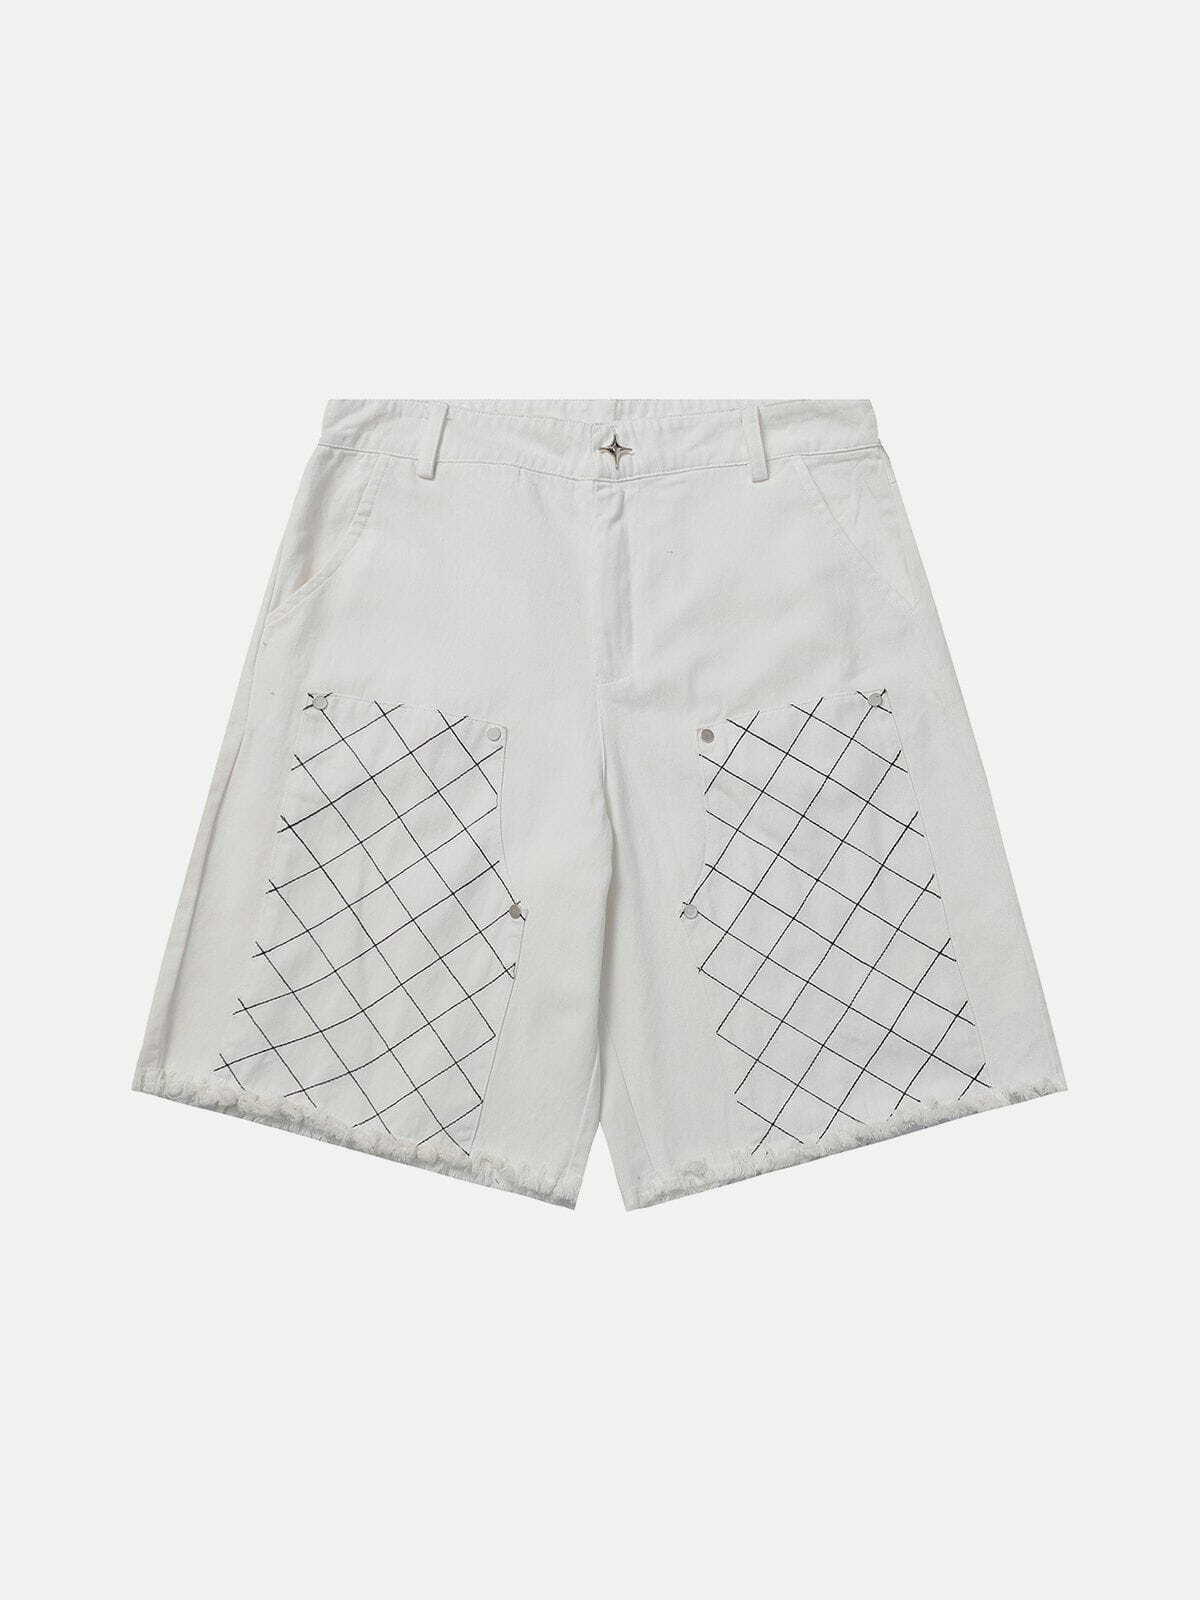 plaid patchwork fringe shorts   youthful urban trendsetter 7127